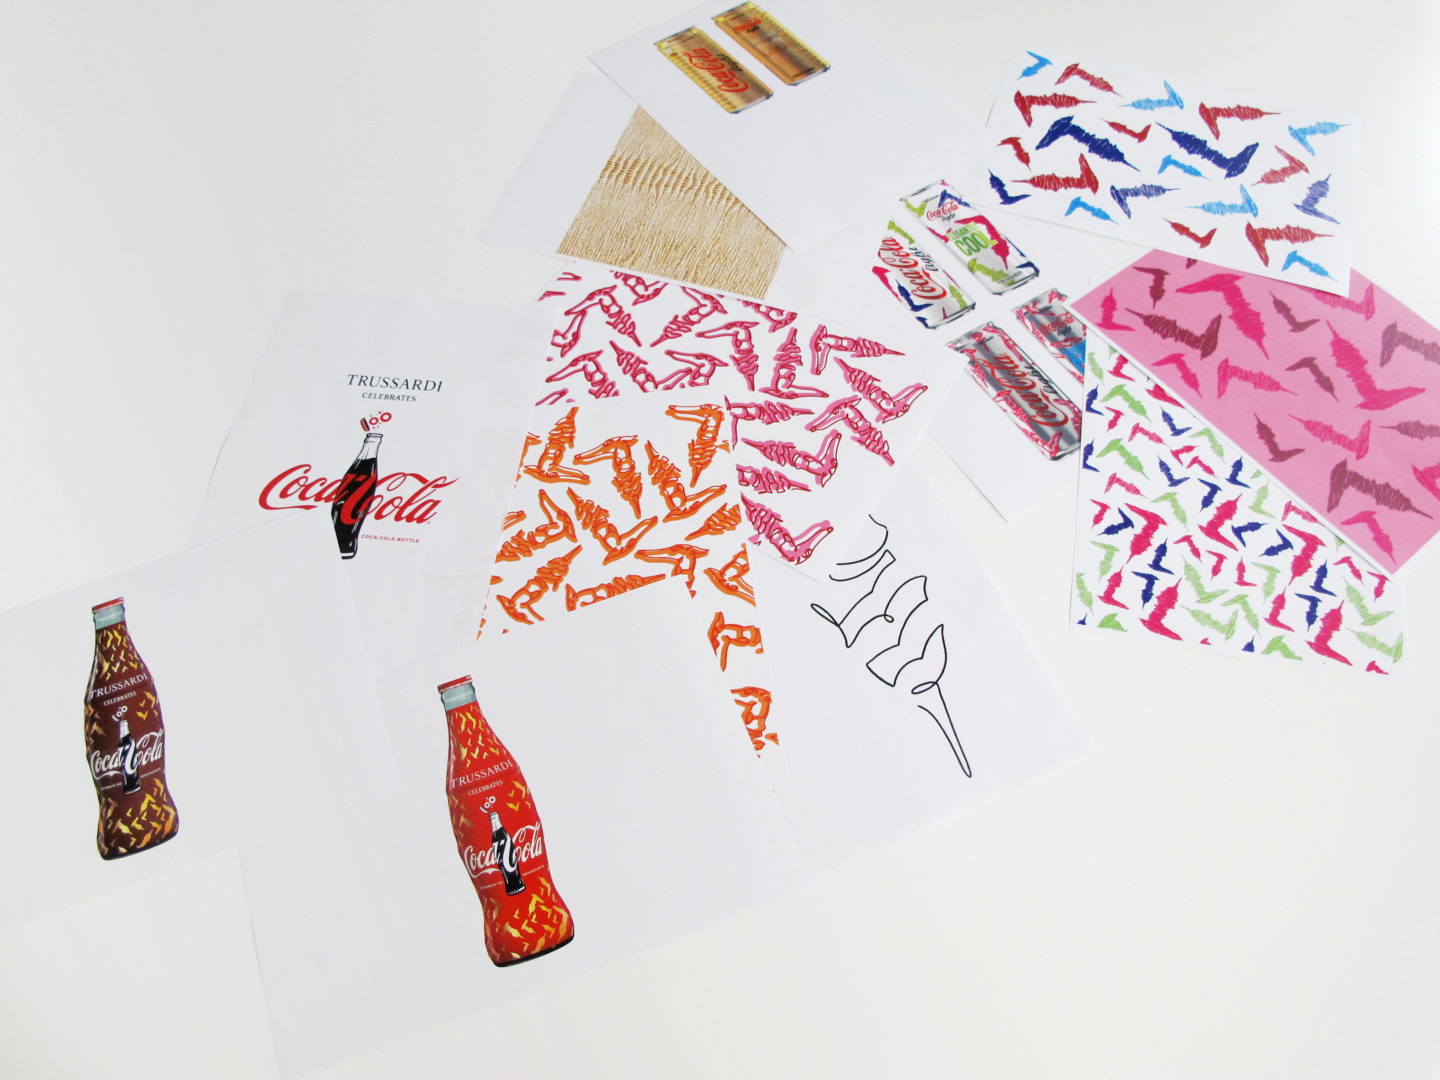 Coca-Cola et Trussardi : un packaging raffiné en édition limitée